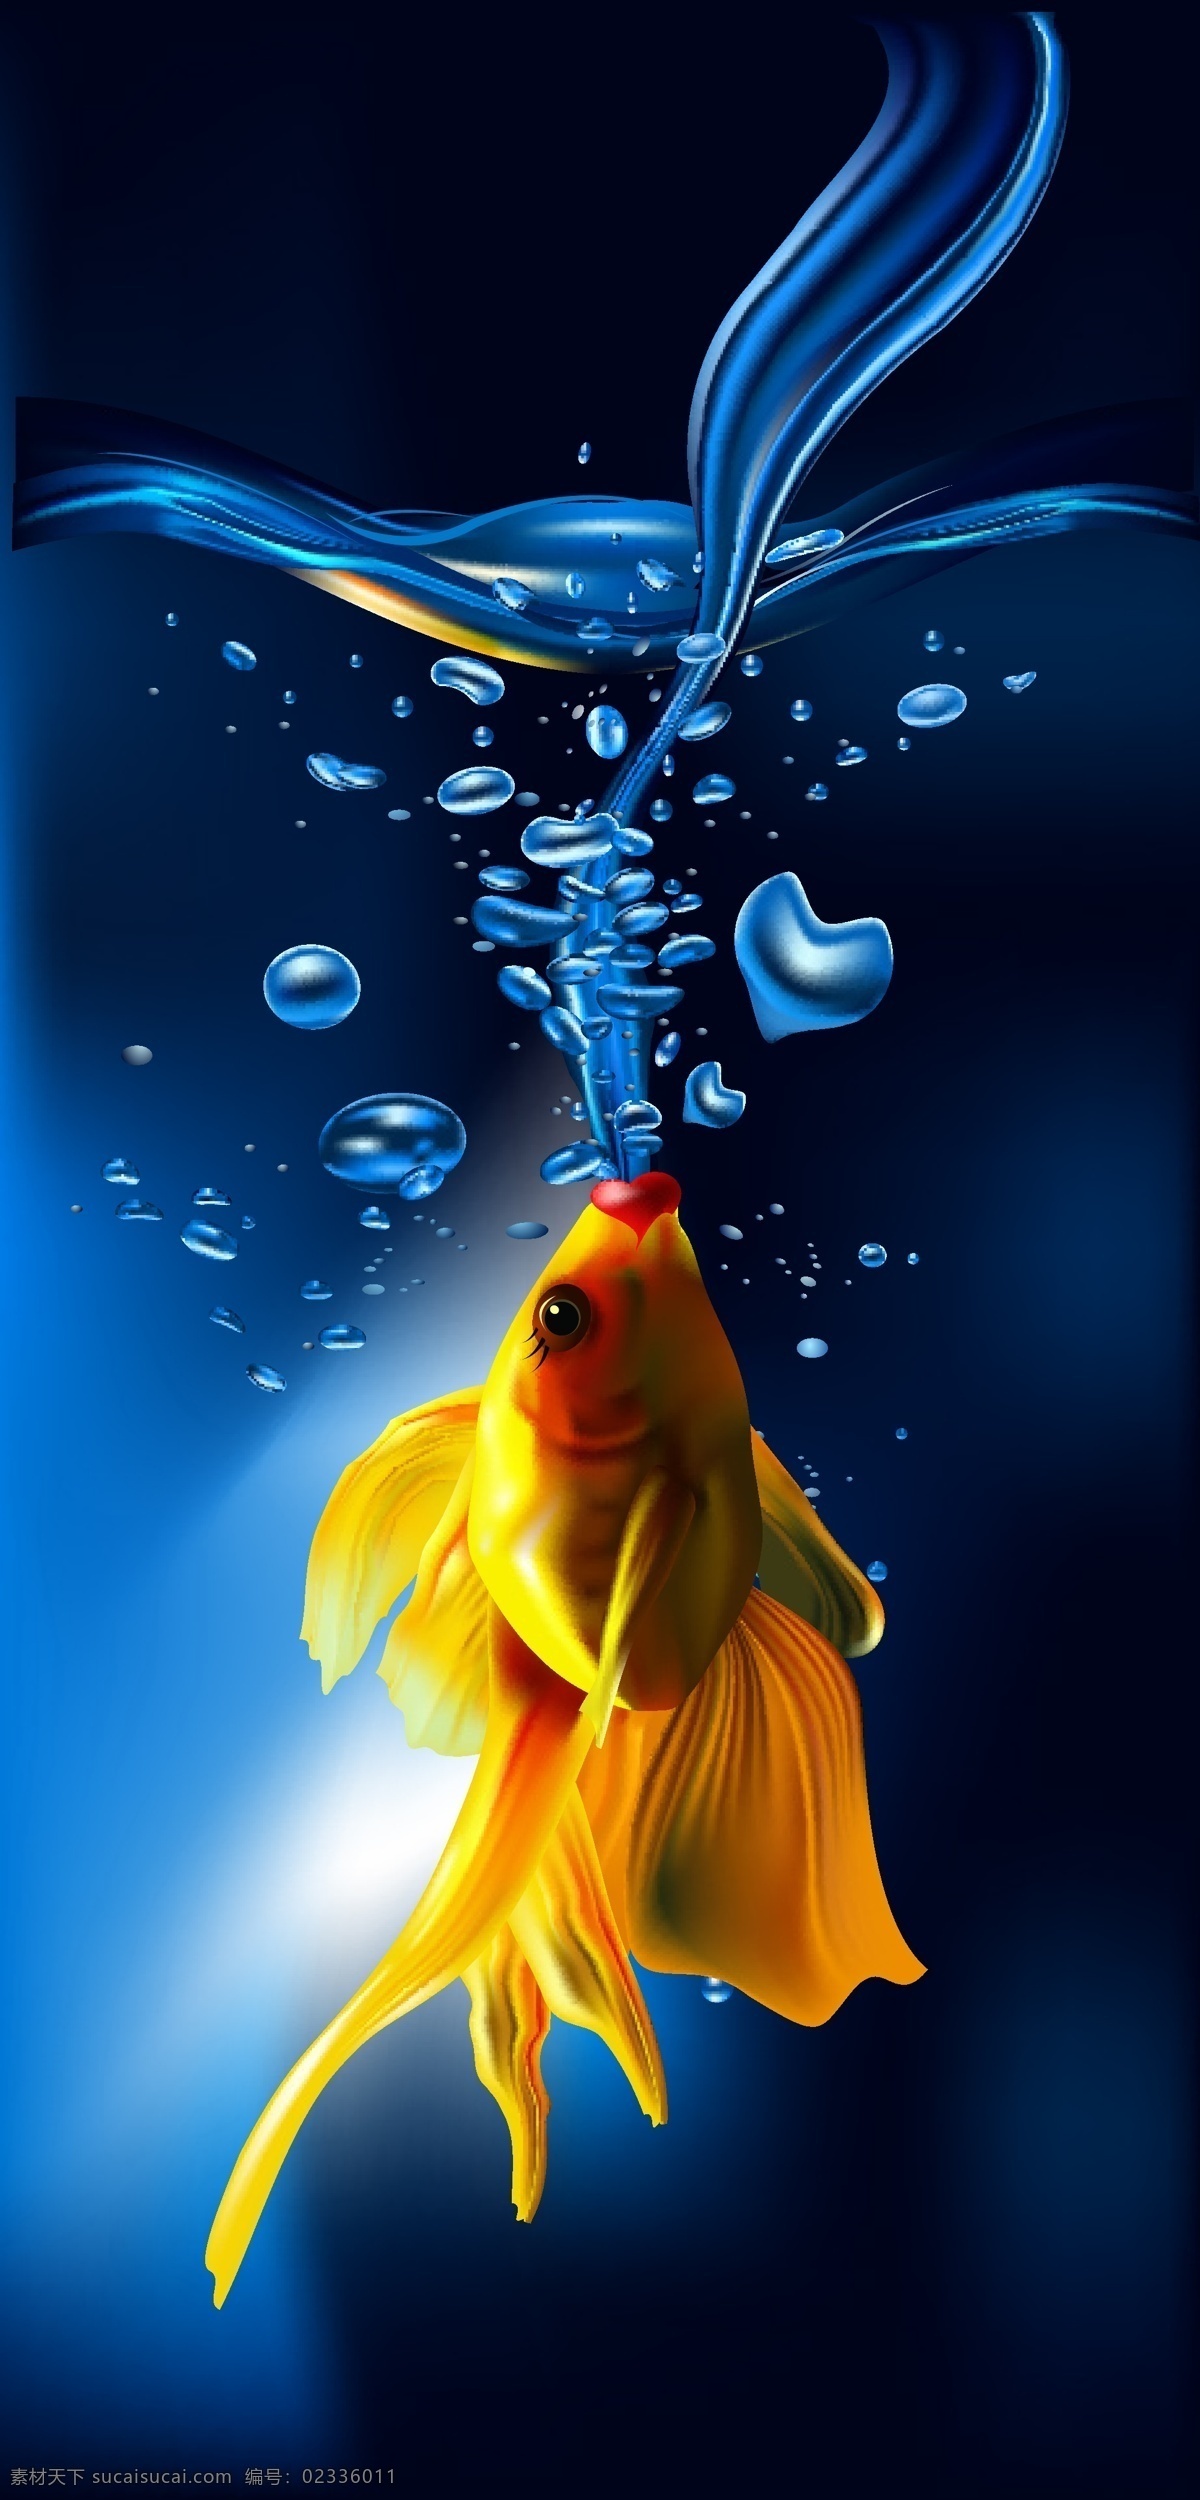 金鱼 喷出 爱心 水泡 水柱 蓝色 水珠 水滴 水面 动感 时尚 梦幻 背景 底纹 矢量 水矢量素材